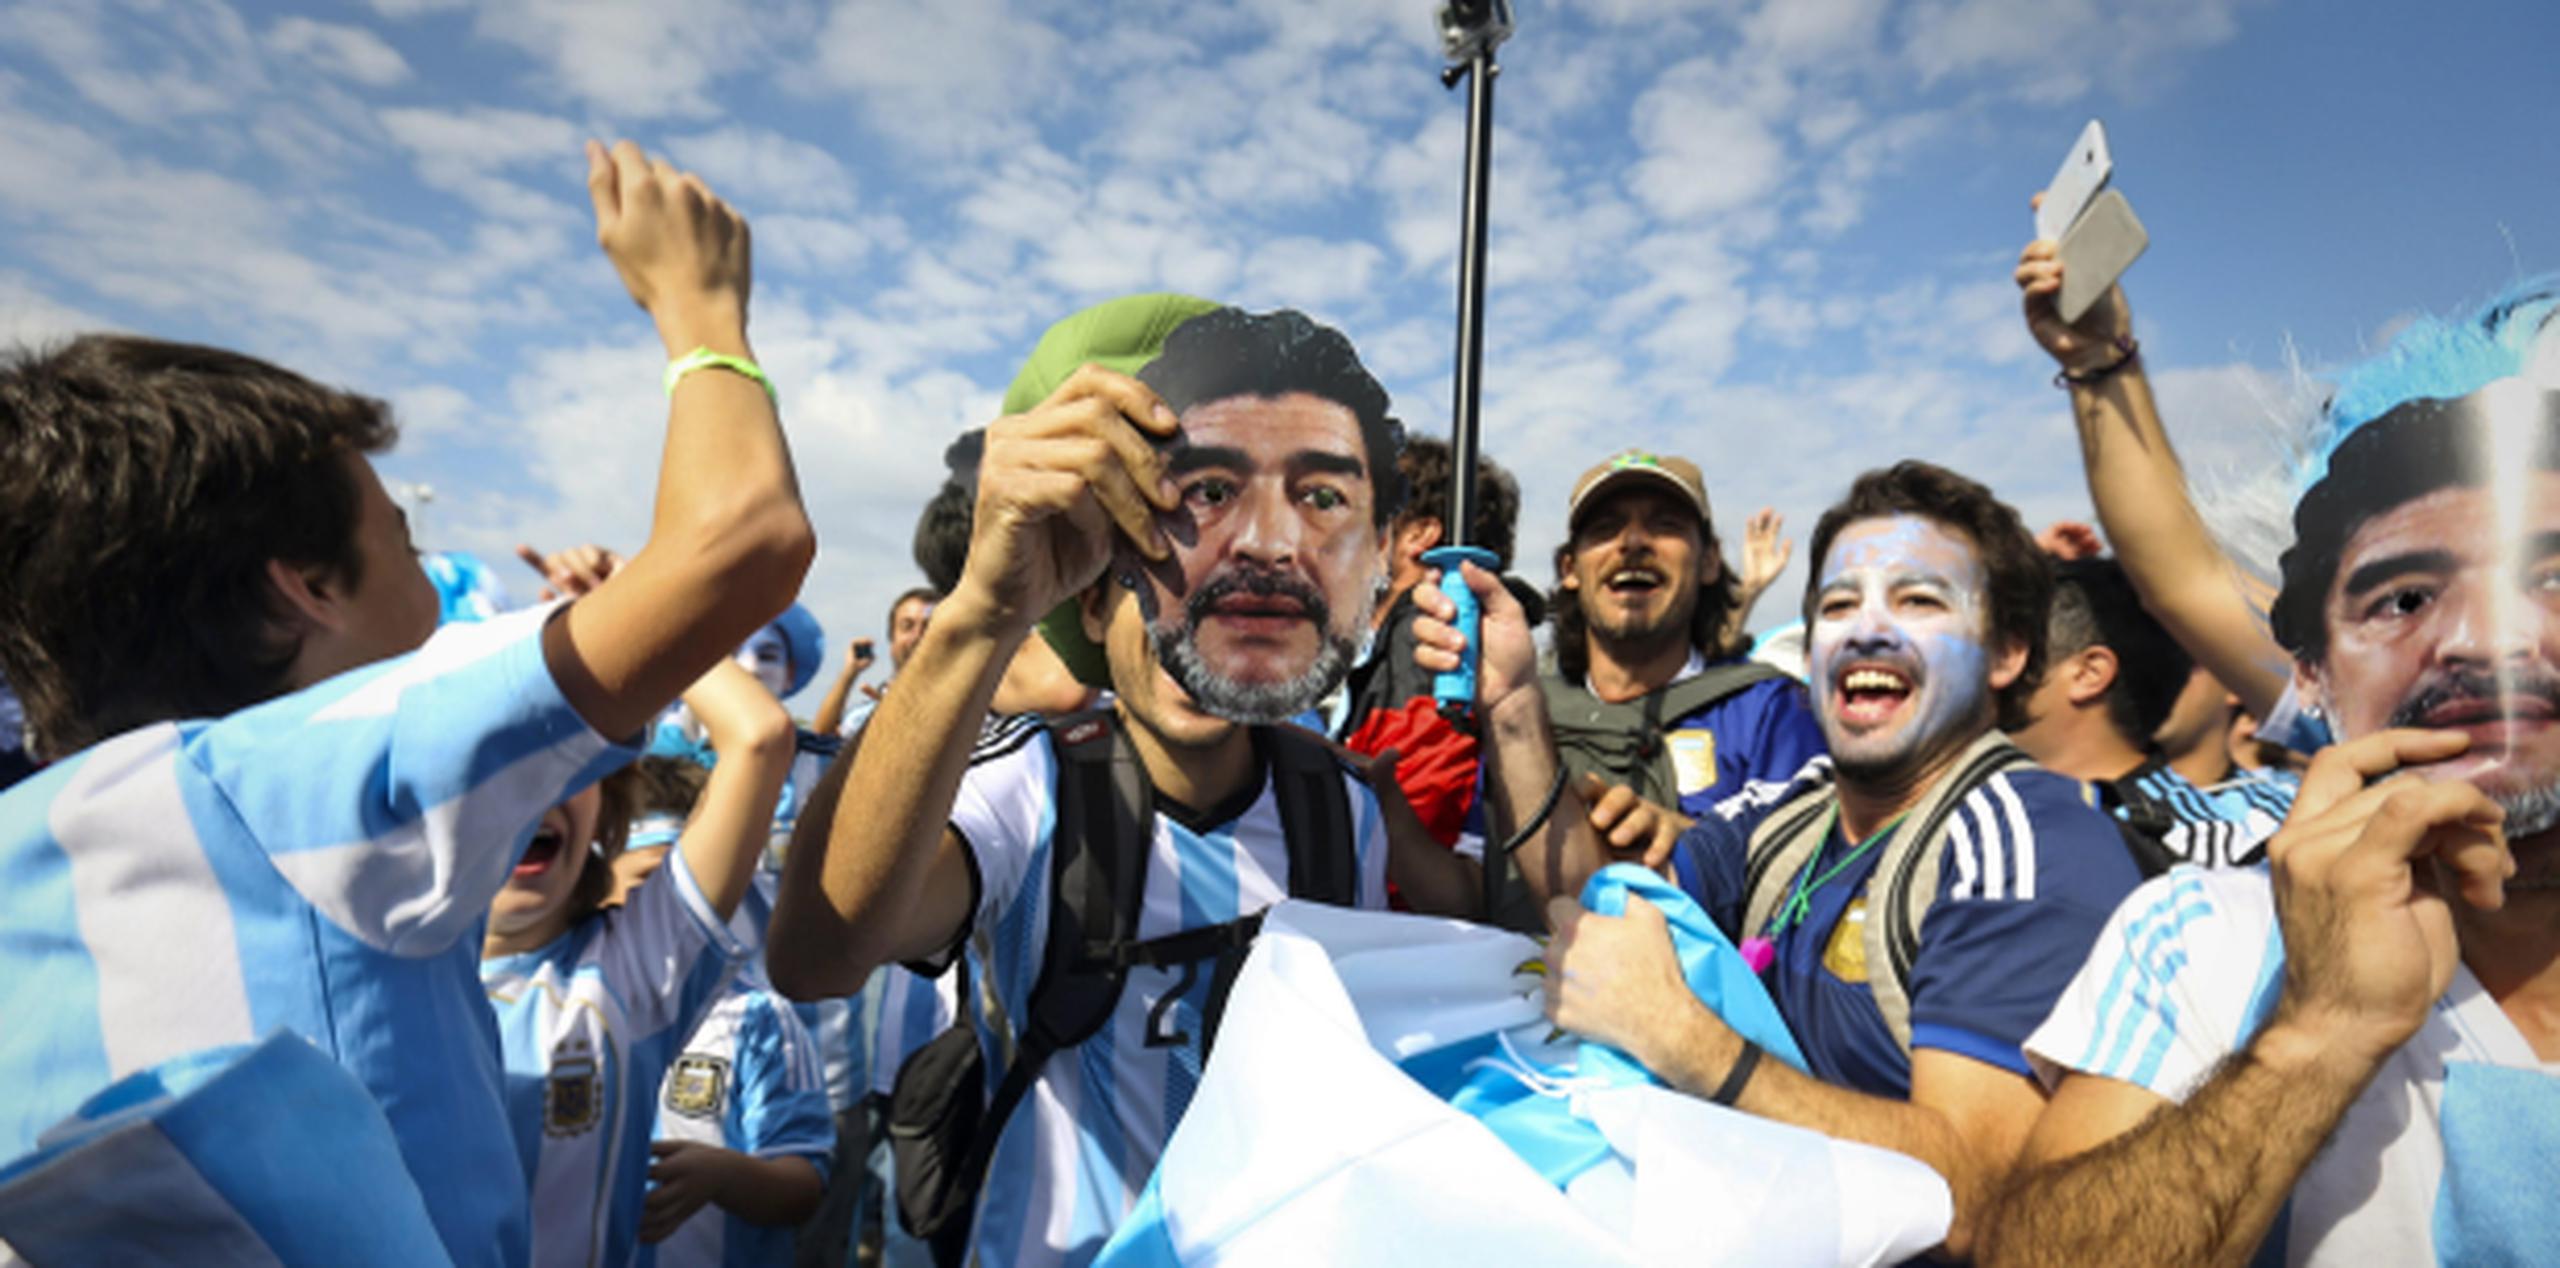 Decenas de fanáticos argentinos y brasileños, muchos de ellos ebrios, se enfrentaron a golpes y se insultaron.(Archivo)